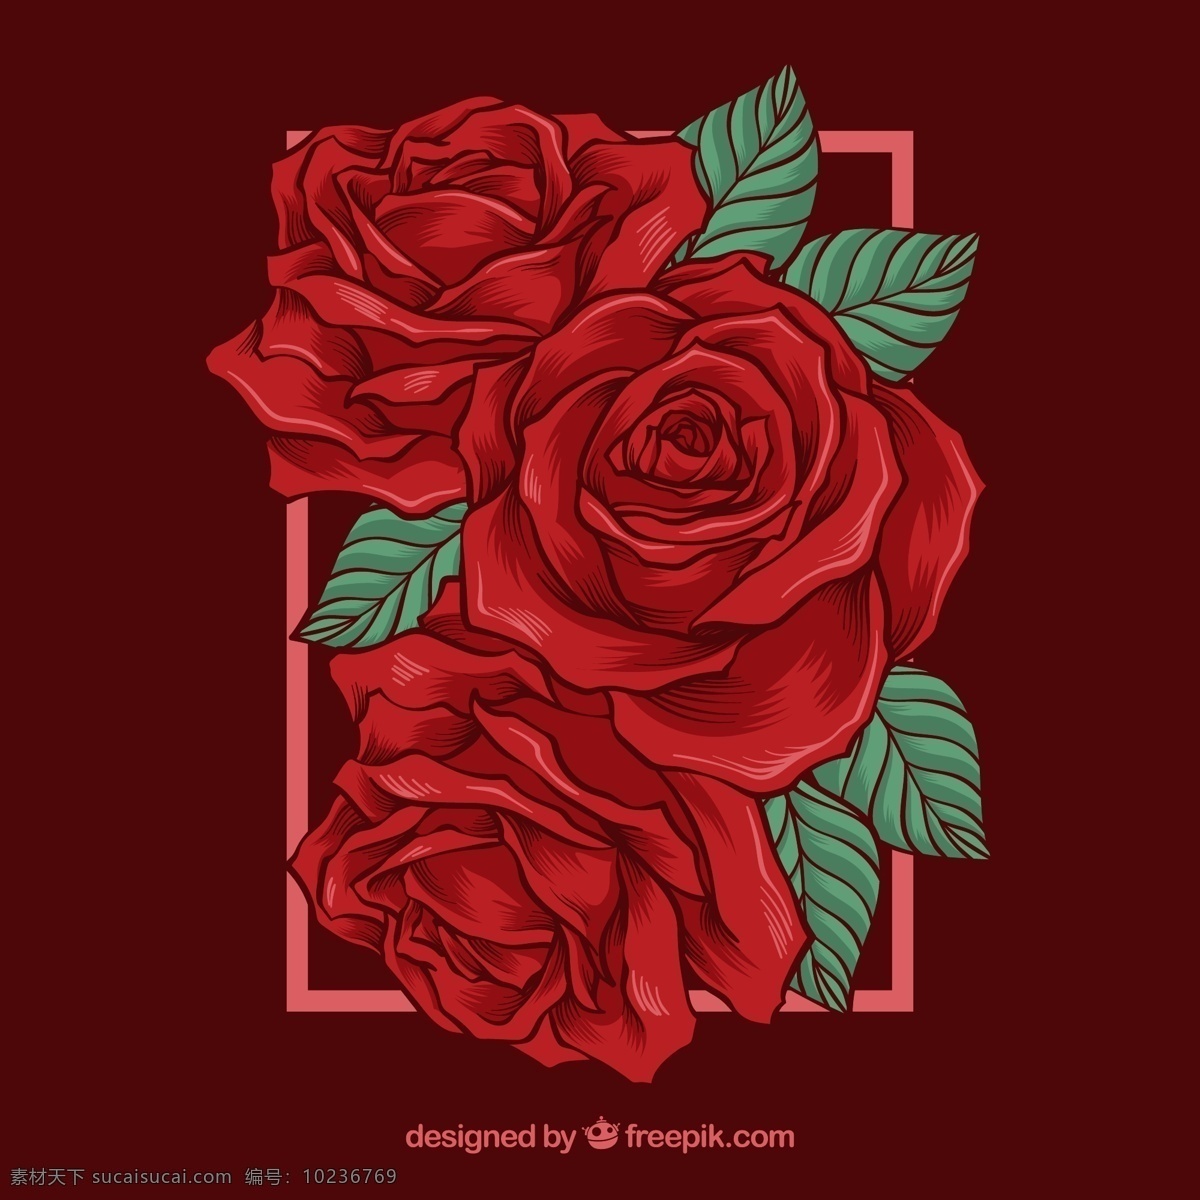 手绘 玫瑰花 矢量 红玫瑰 花卉 矢量图 高清图片